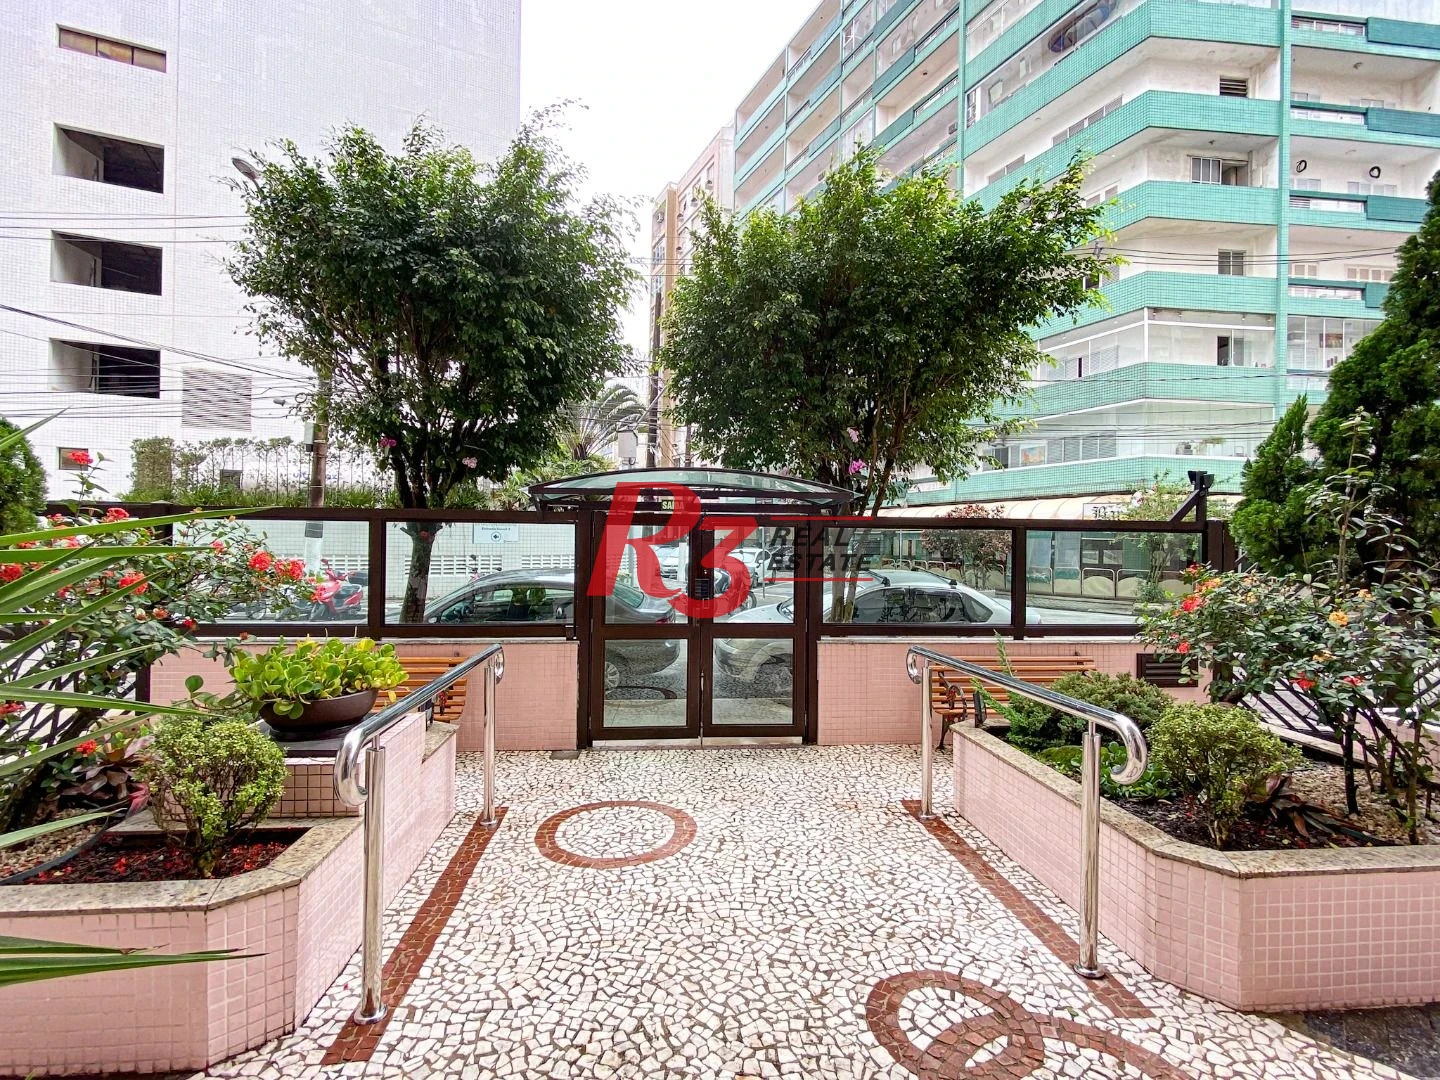 Oportunidade à venda a 1 quadra da orla do Boqueirão, em Santos, com 2 quartos, 1 com sacada, prédio com elevadores e portaria.